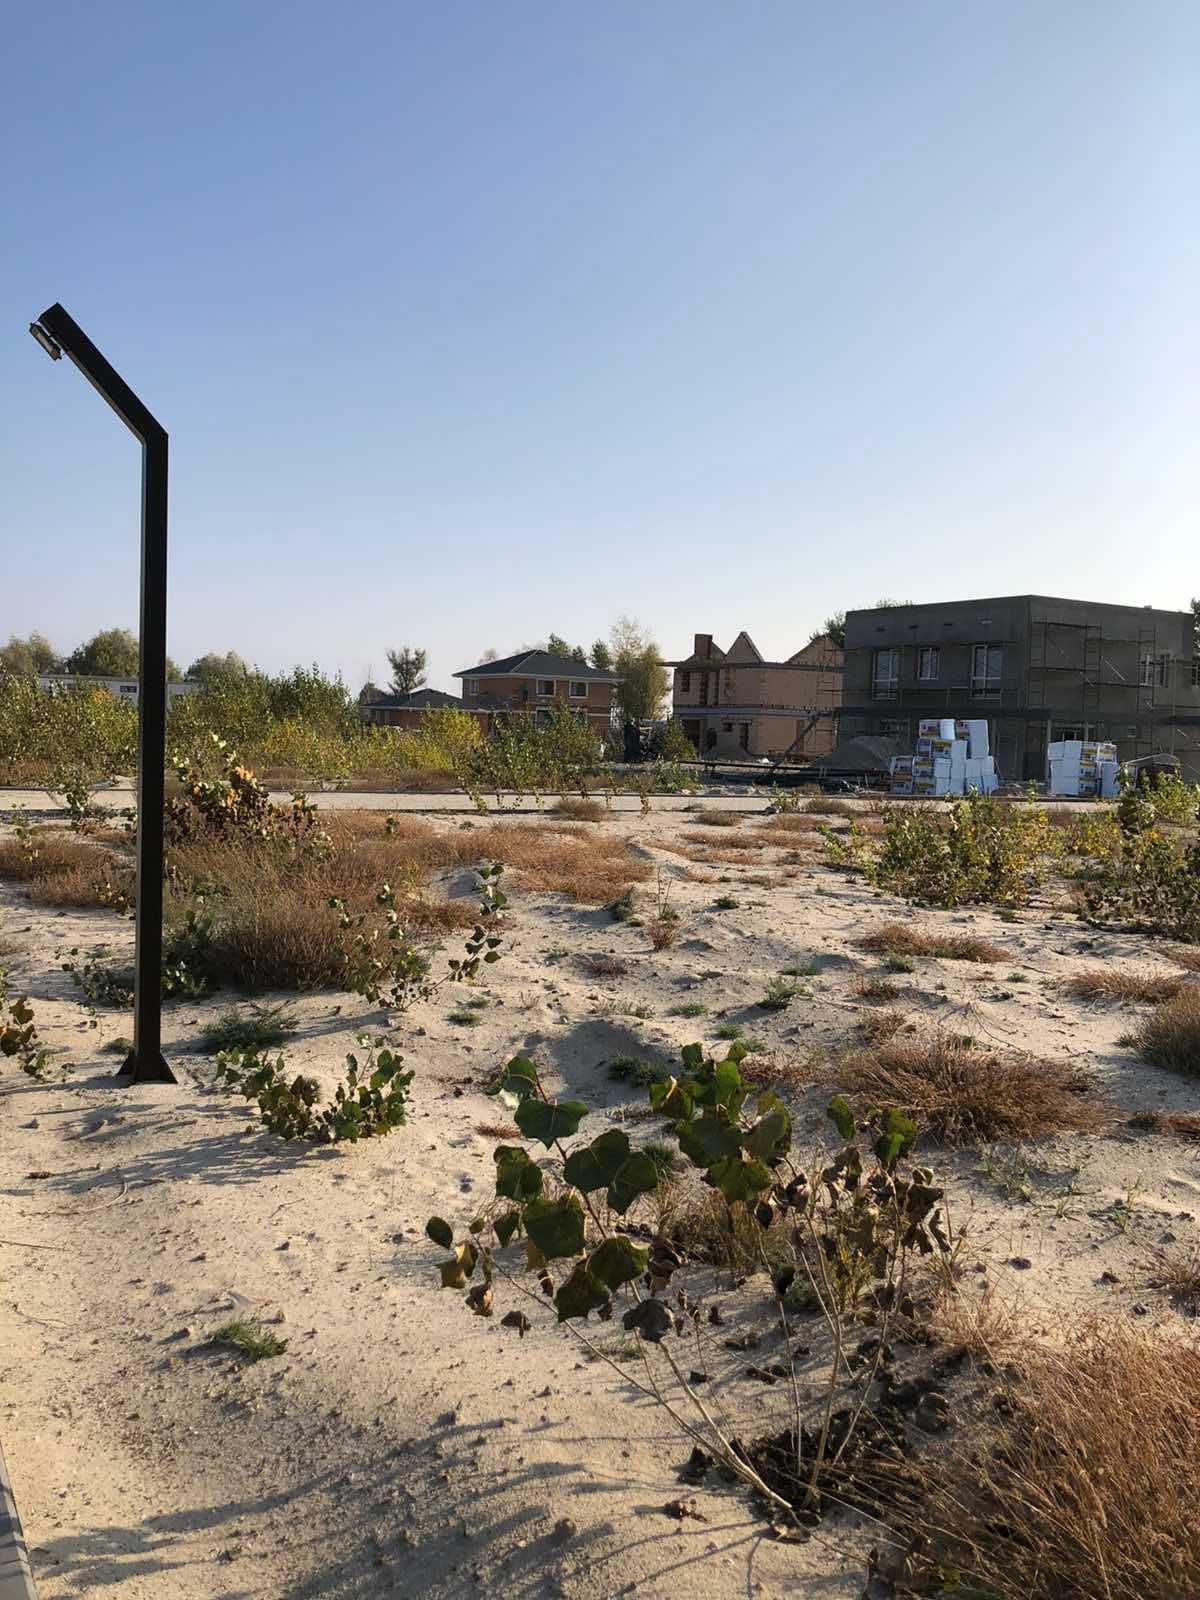 Земельна ділянка під житлову забудову на березі Дніпра,  Riviera Club